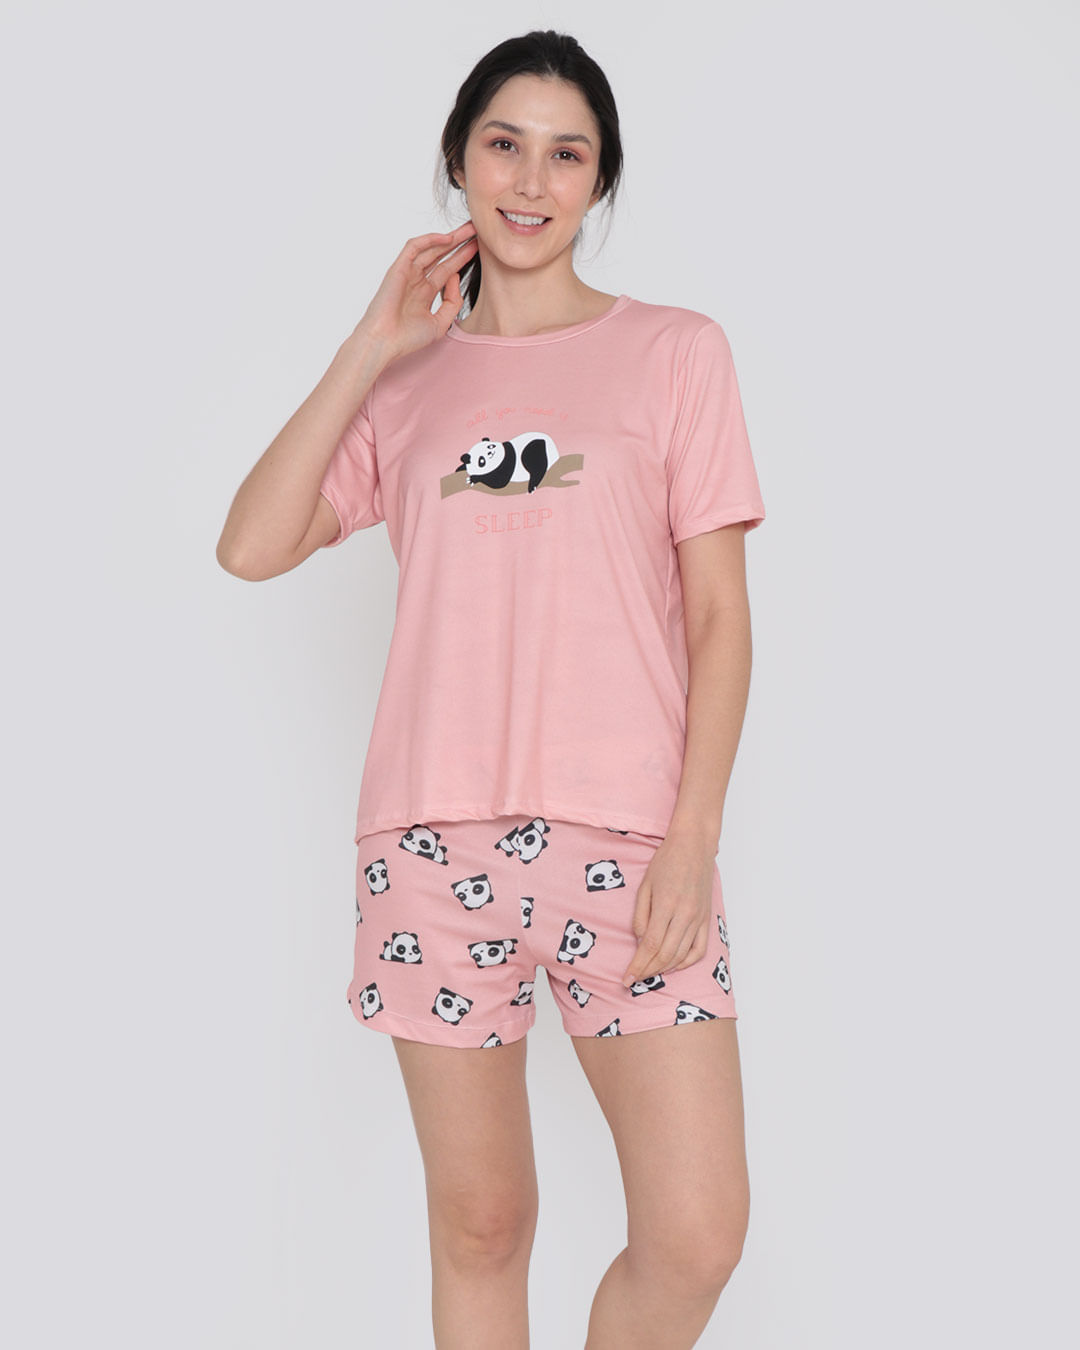 Pijama-Feminino-Curto-Panda-Rosa-Claro